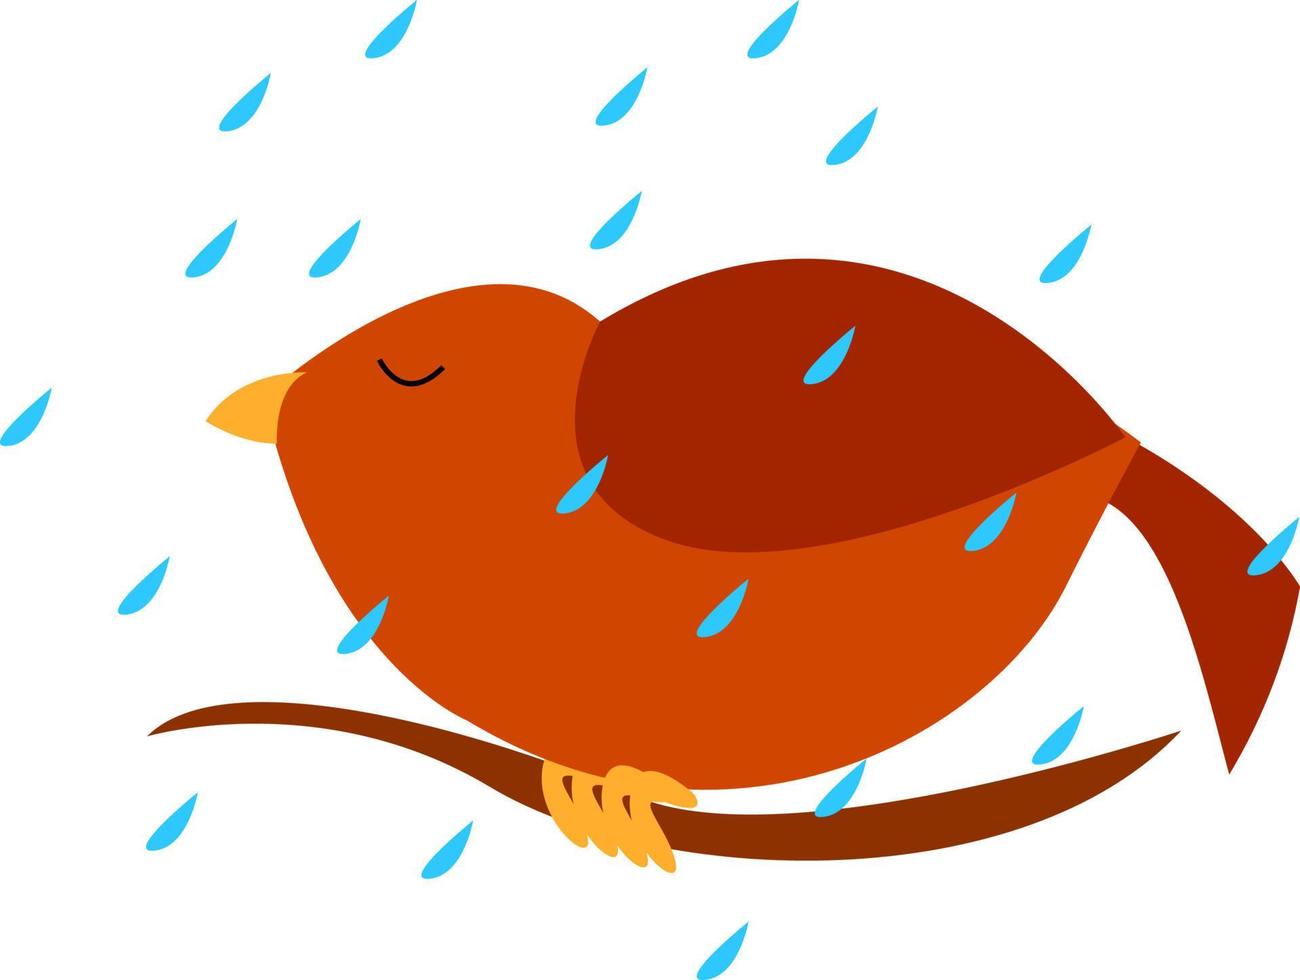 oiseau sur la pluie, illustration, vecteur sur fond blanc.